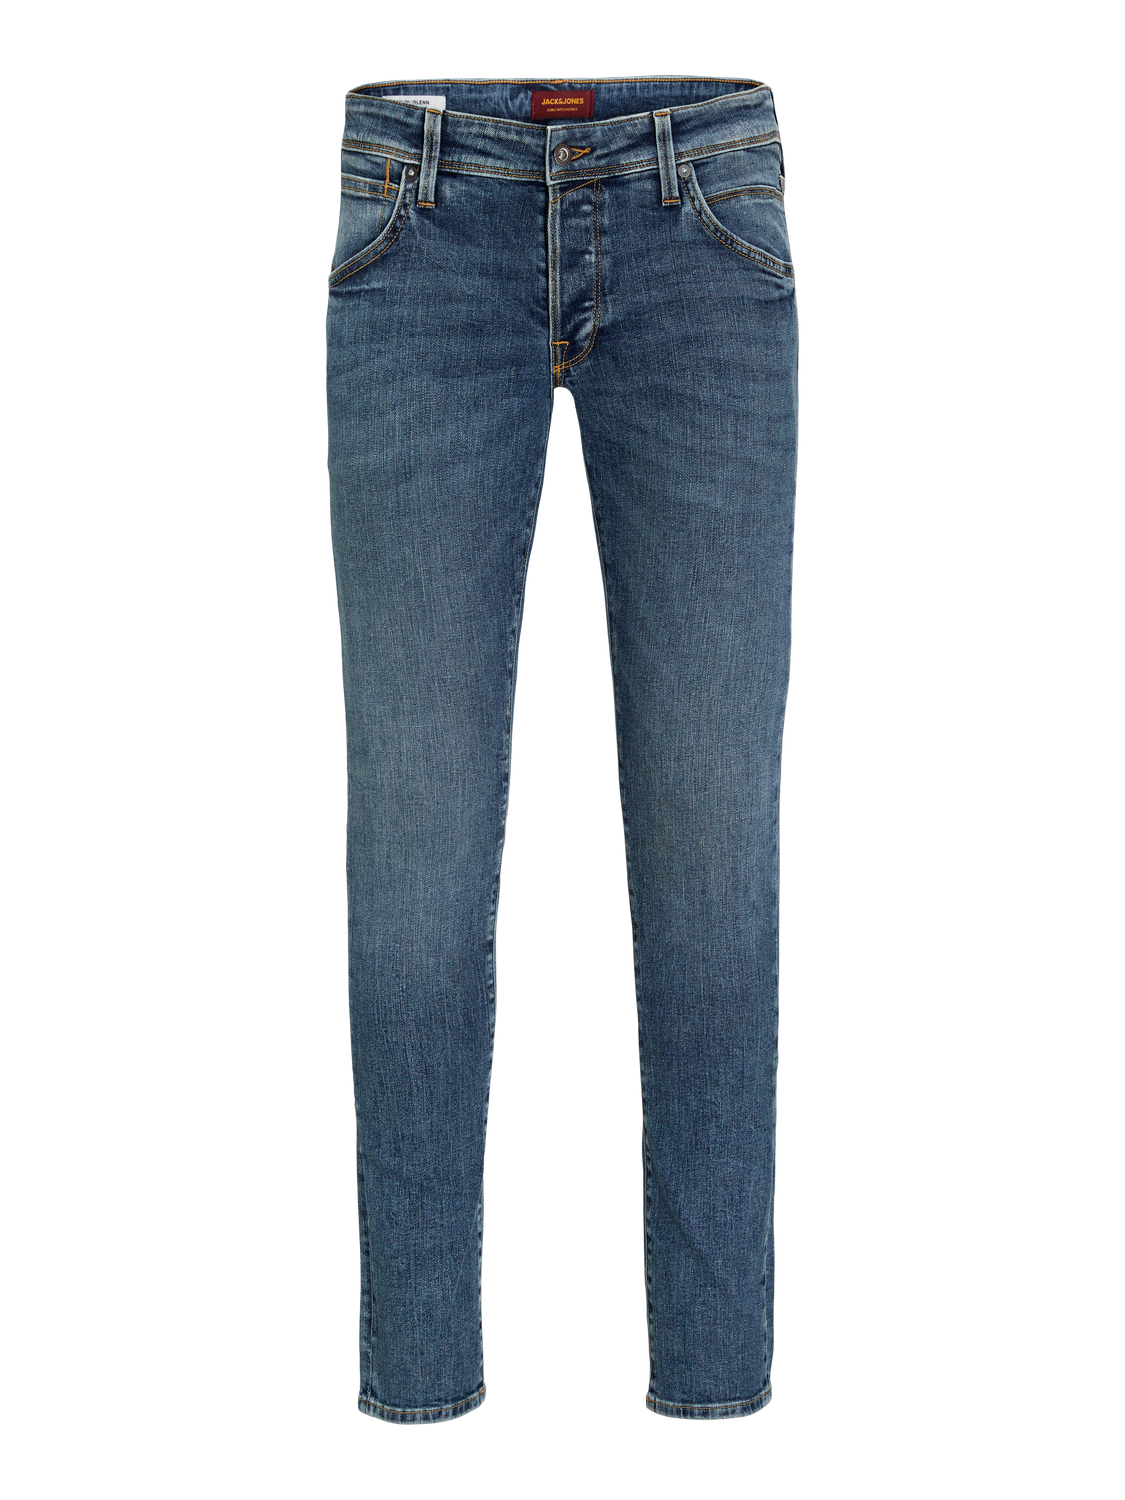 Jack & Jones Dark Grey Slim Fit Jeans | New Look